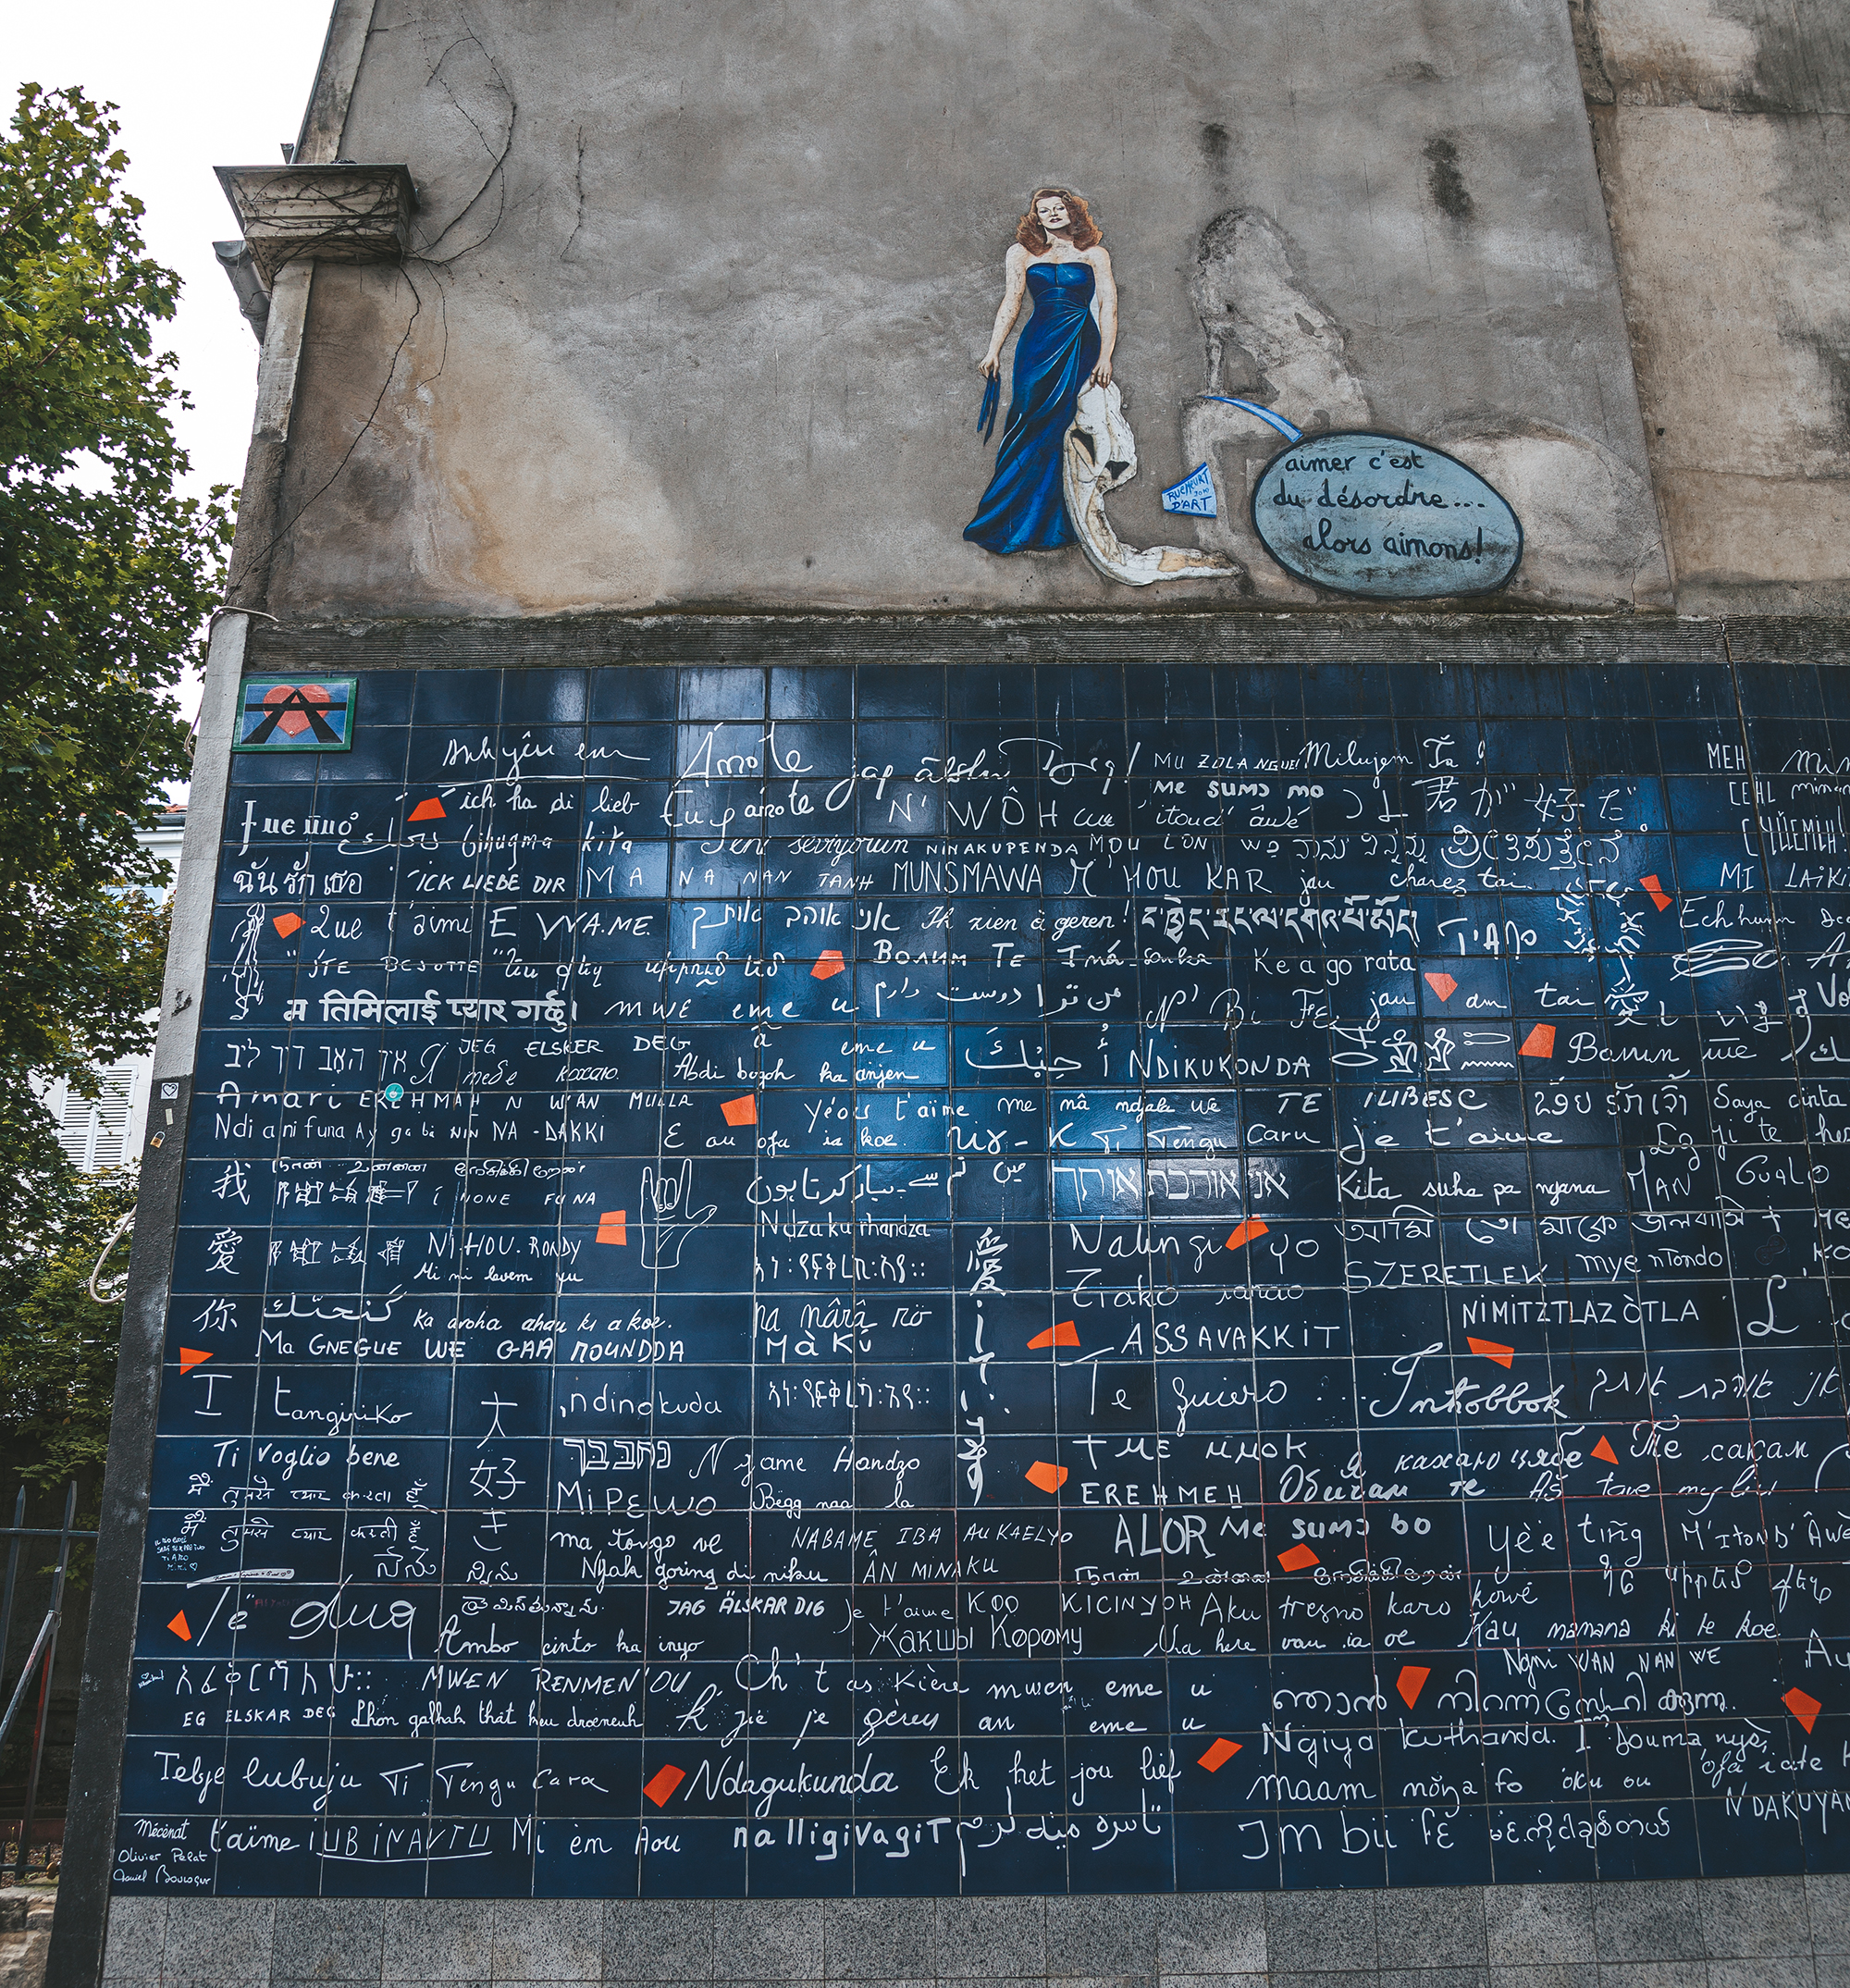 Le mur des je t’aime in Paris   
© Marielle Janotta - My Travel Island